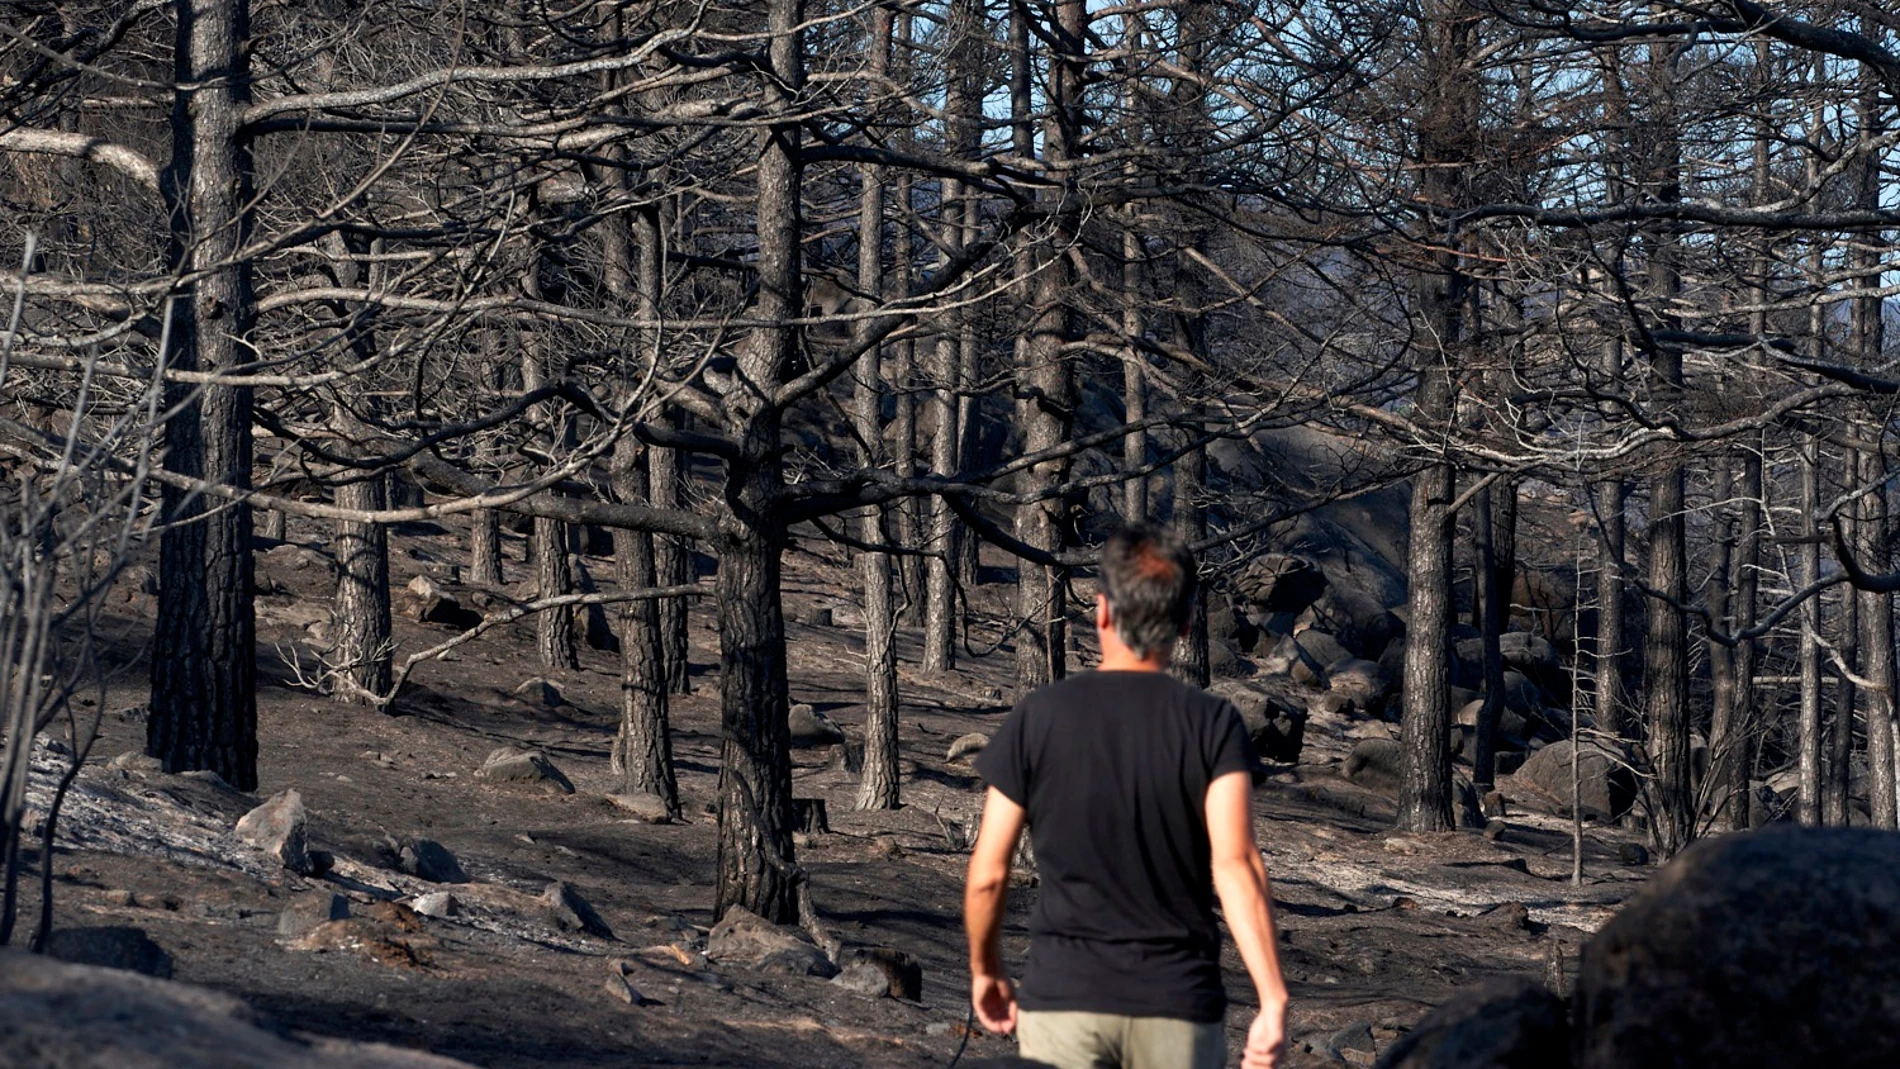 Vista general de pinares quemados en Palacios (Sotalvo) uno de los primeros pueblos en ser desalojados por la proximidad de las llamas del incendio de Navalacruz que se originó el 14 de Agosto